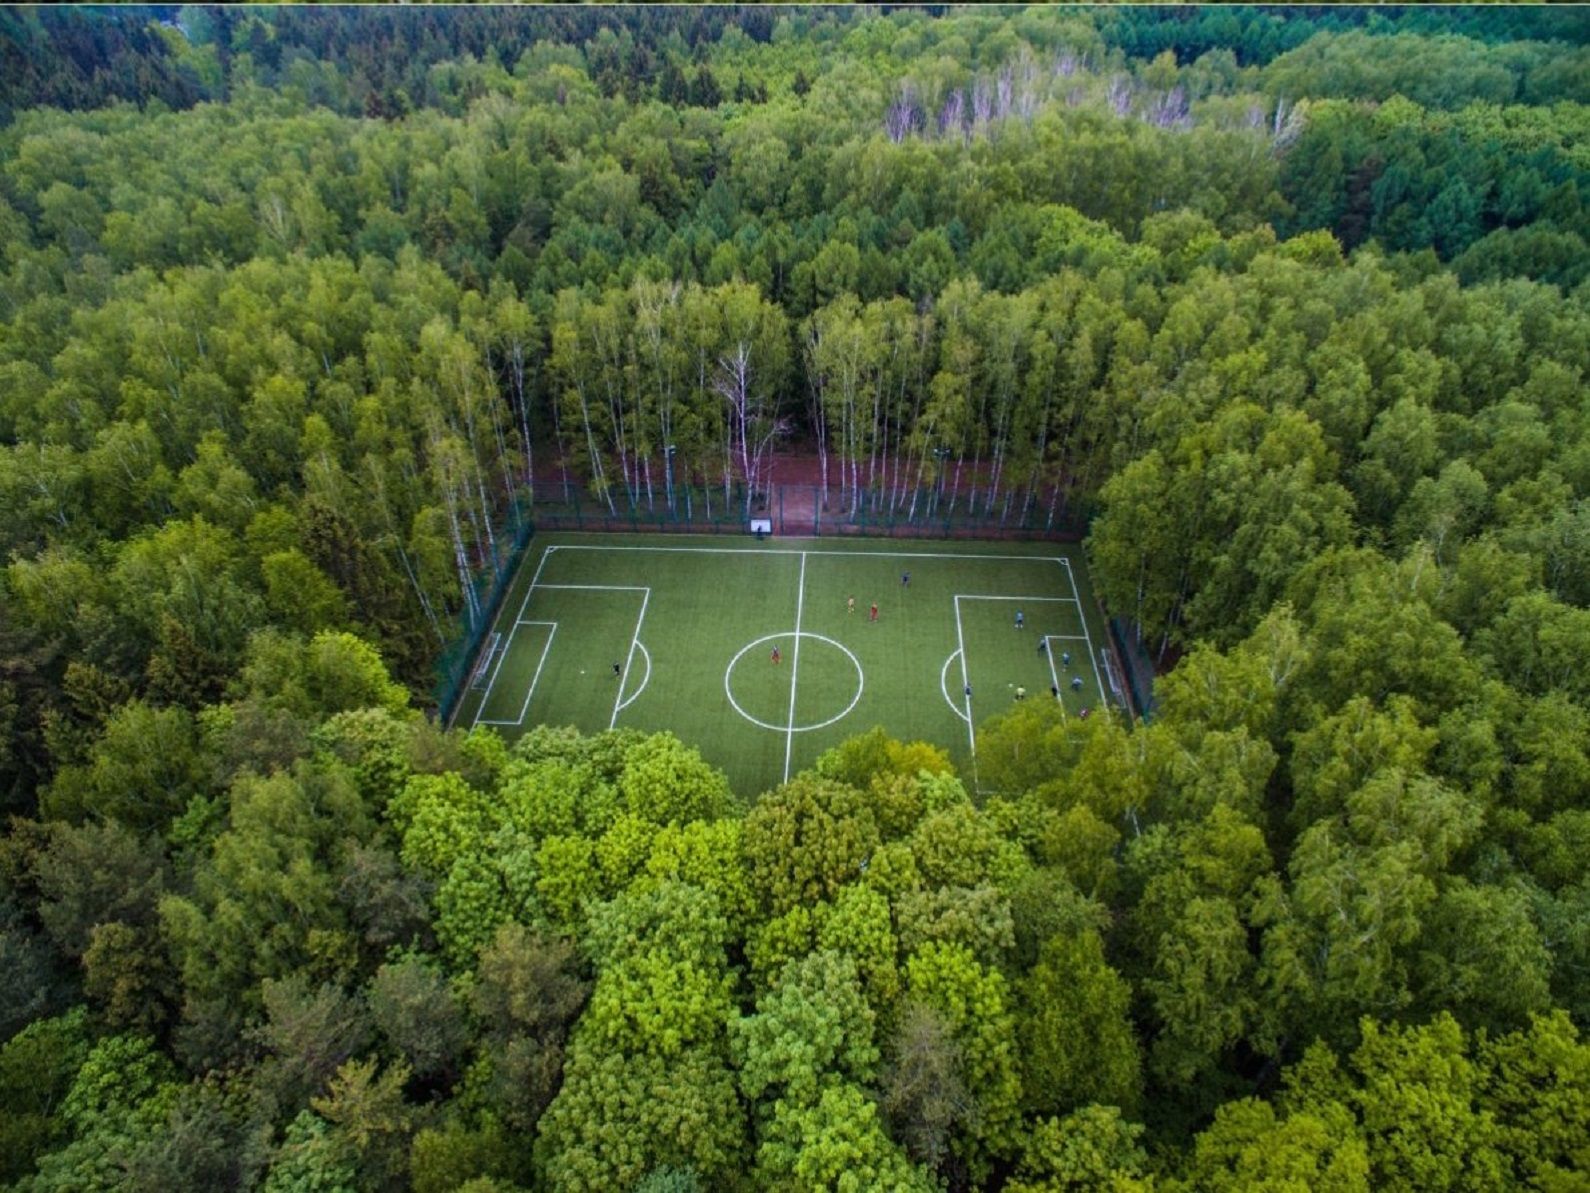 Не, това не е тропическа джунгла, а стадионът в Национален пар "Мешчерский" в Русия.